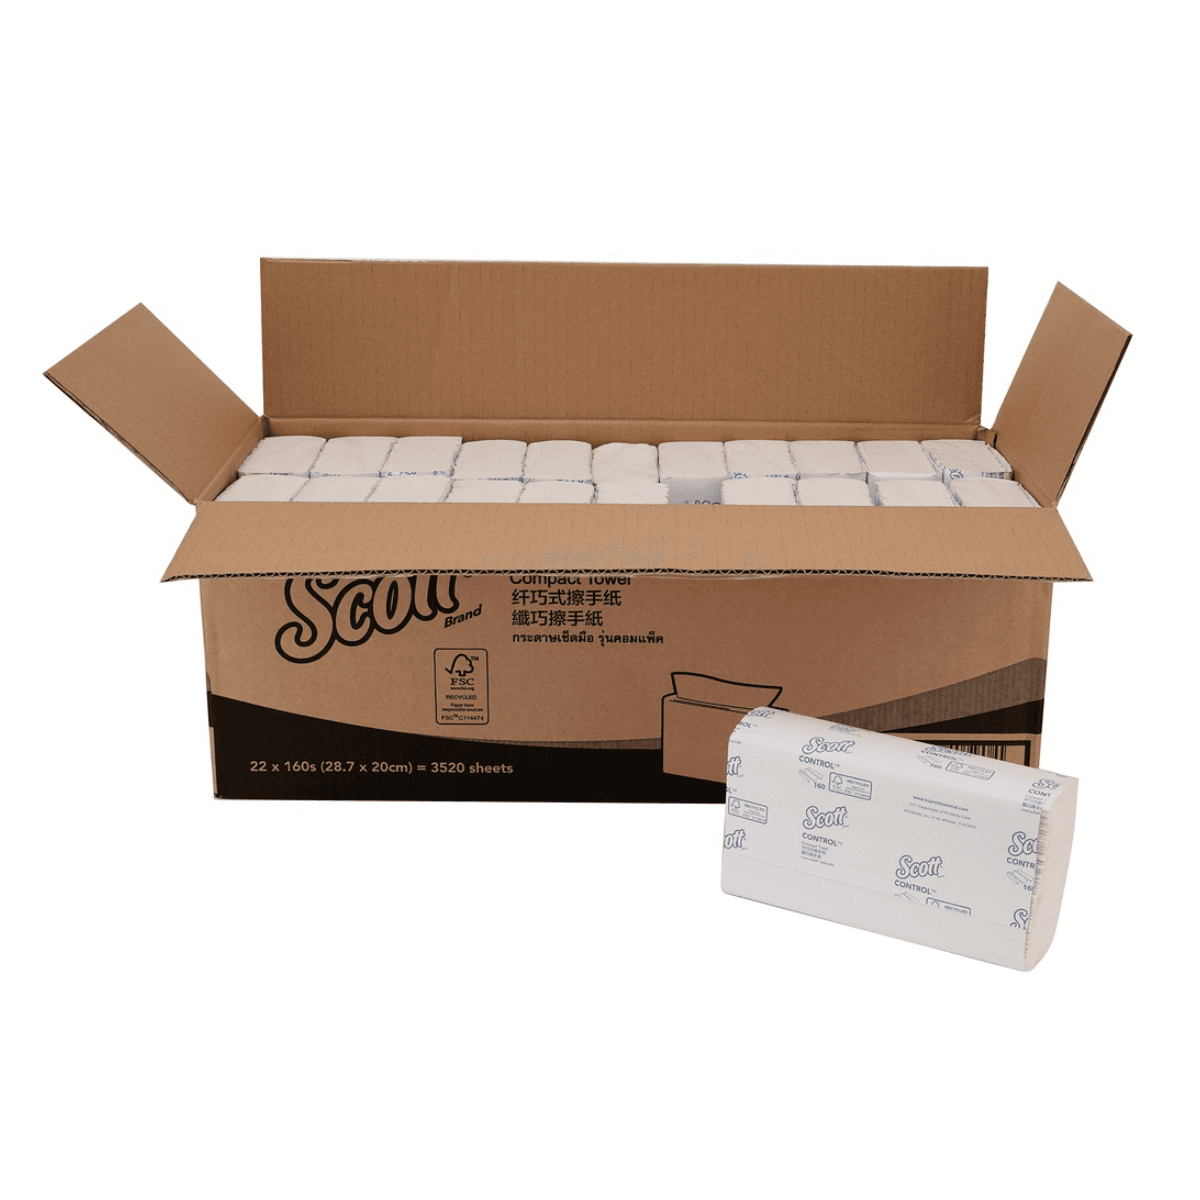 สก๊อตต์ คอนโทรล กระดาษเช็ดมือแบบแผ่น คอมแพค ทาวเวิล รหัสสินค้า 27011 หนา 1 ชั้น ขนาดแผ่น 20.0 x 28.7 ซม. 160 แผ่น x 22 ห่อ/ลัง (ยกลัง)